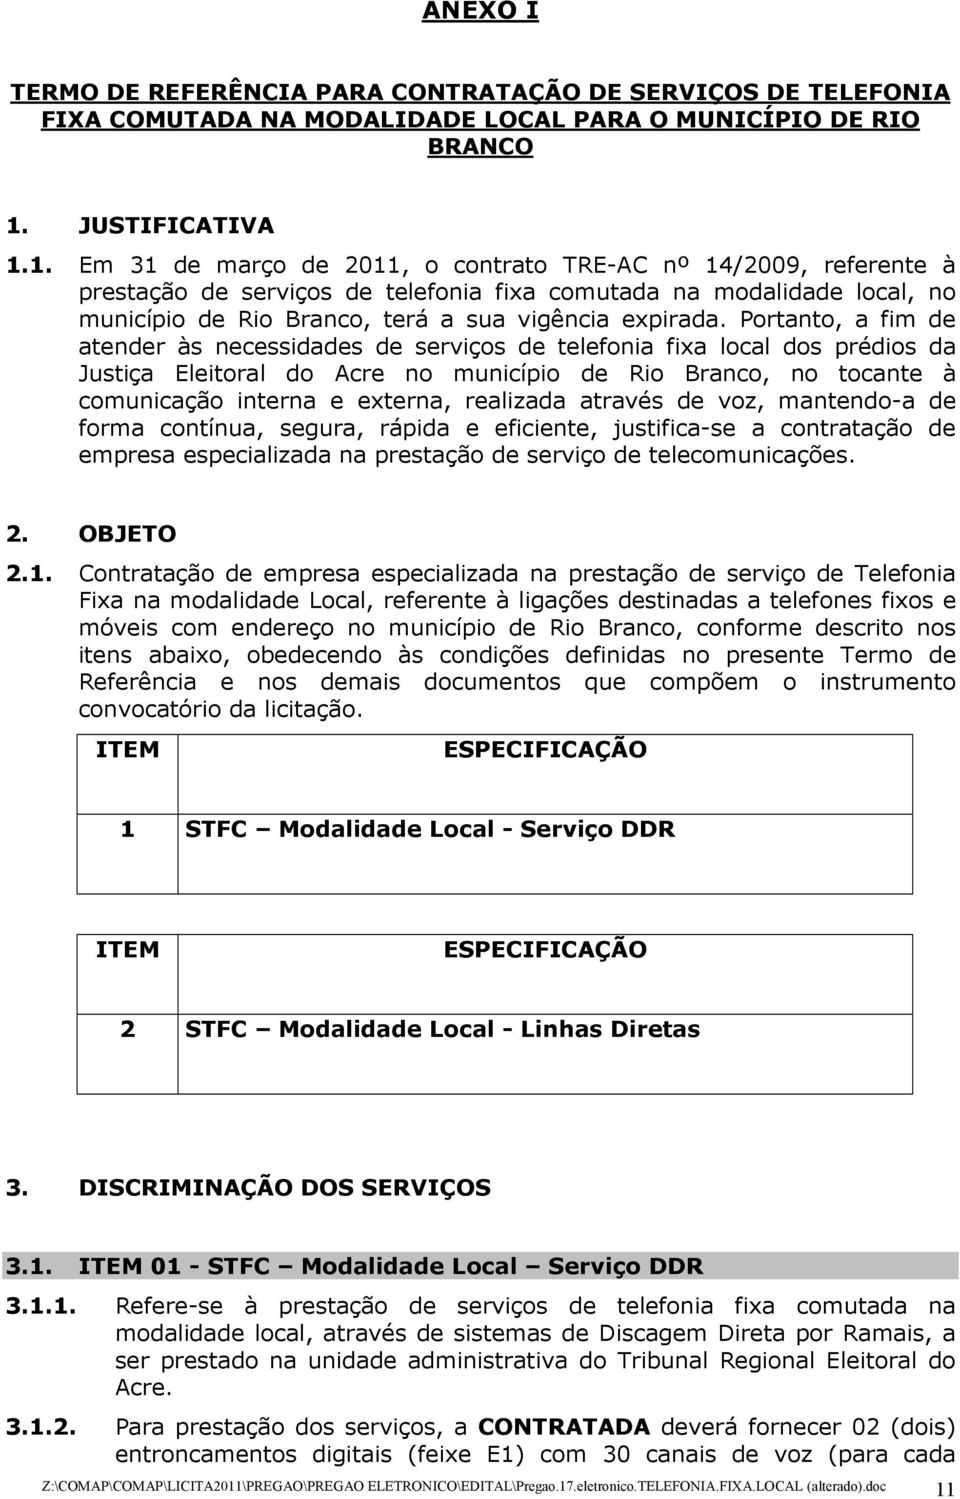 1. Em 31 de março de 2011, o contrato TRE-AC nº 14/2009, referente à prestação de serviços de telefonia fixa comutada na modalidade local, no município de Rio Branco, terá a sua vigência expirada.